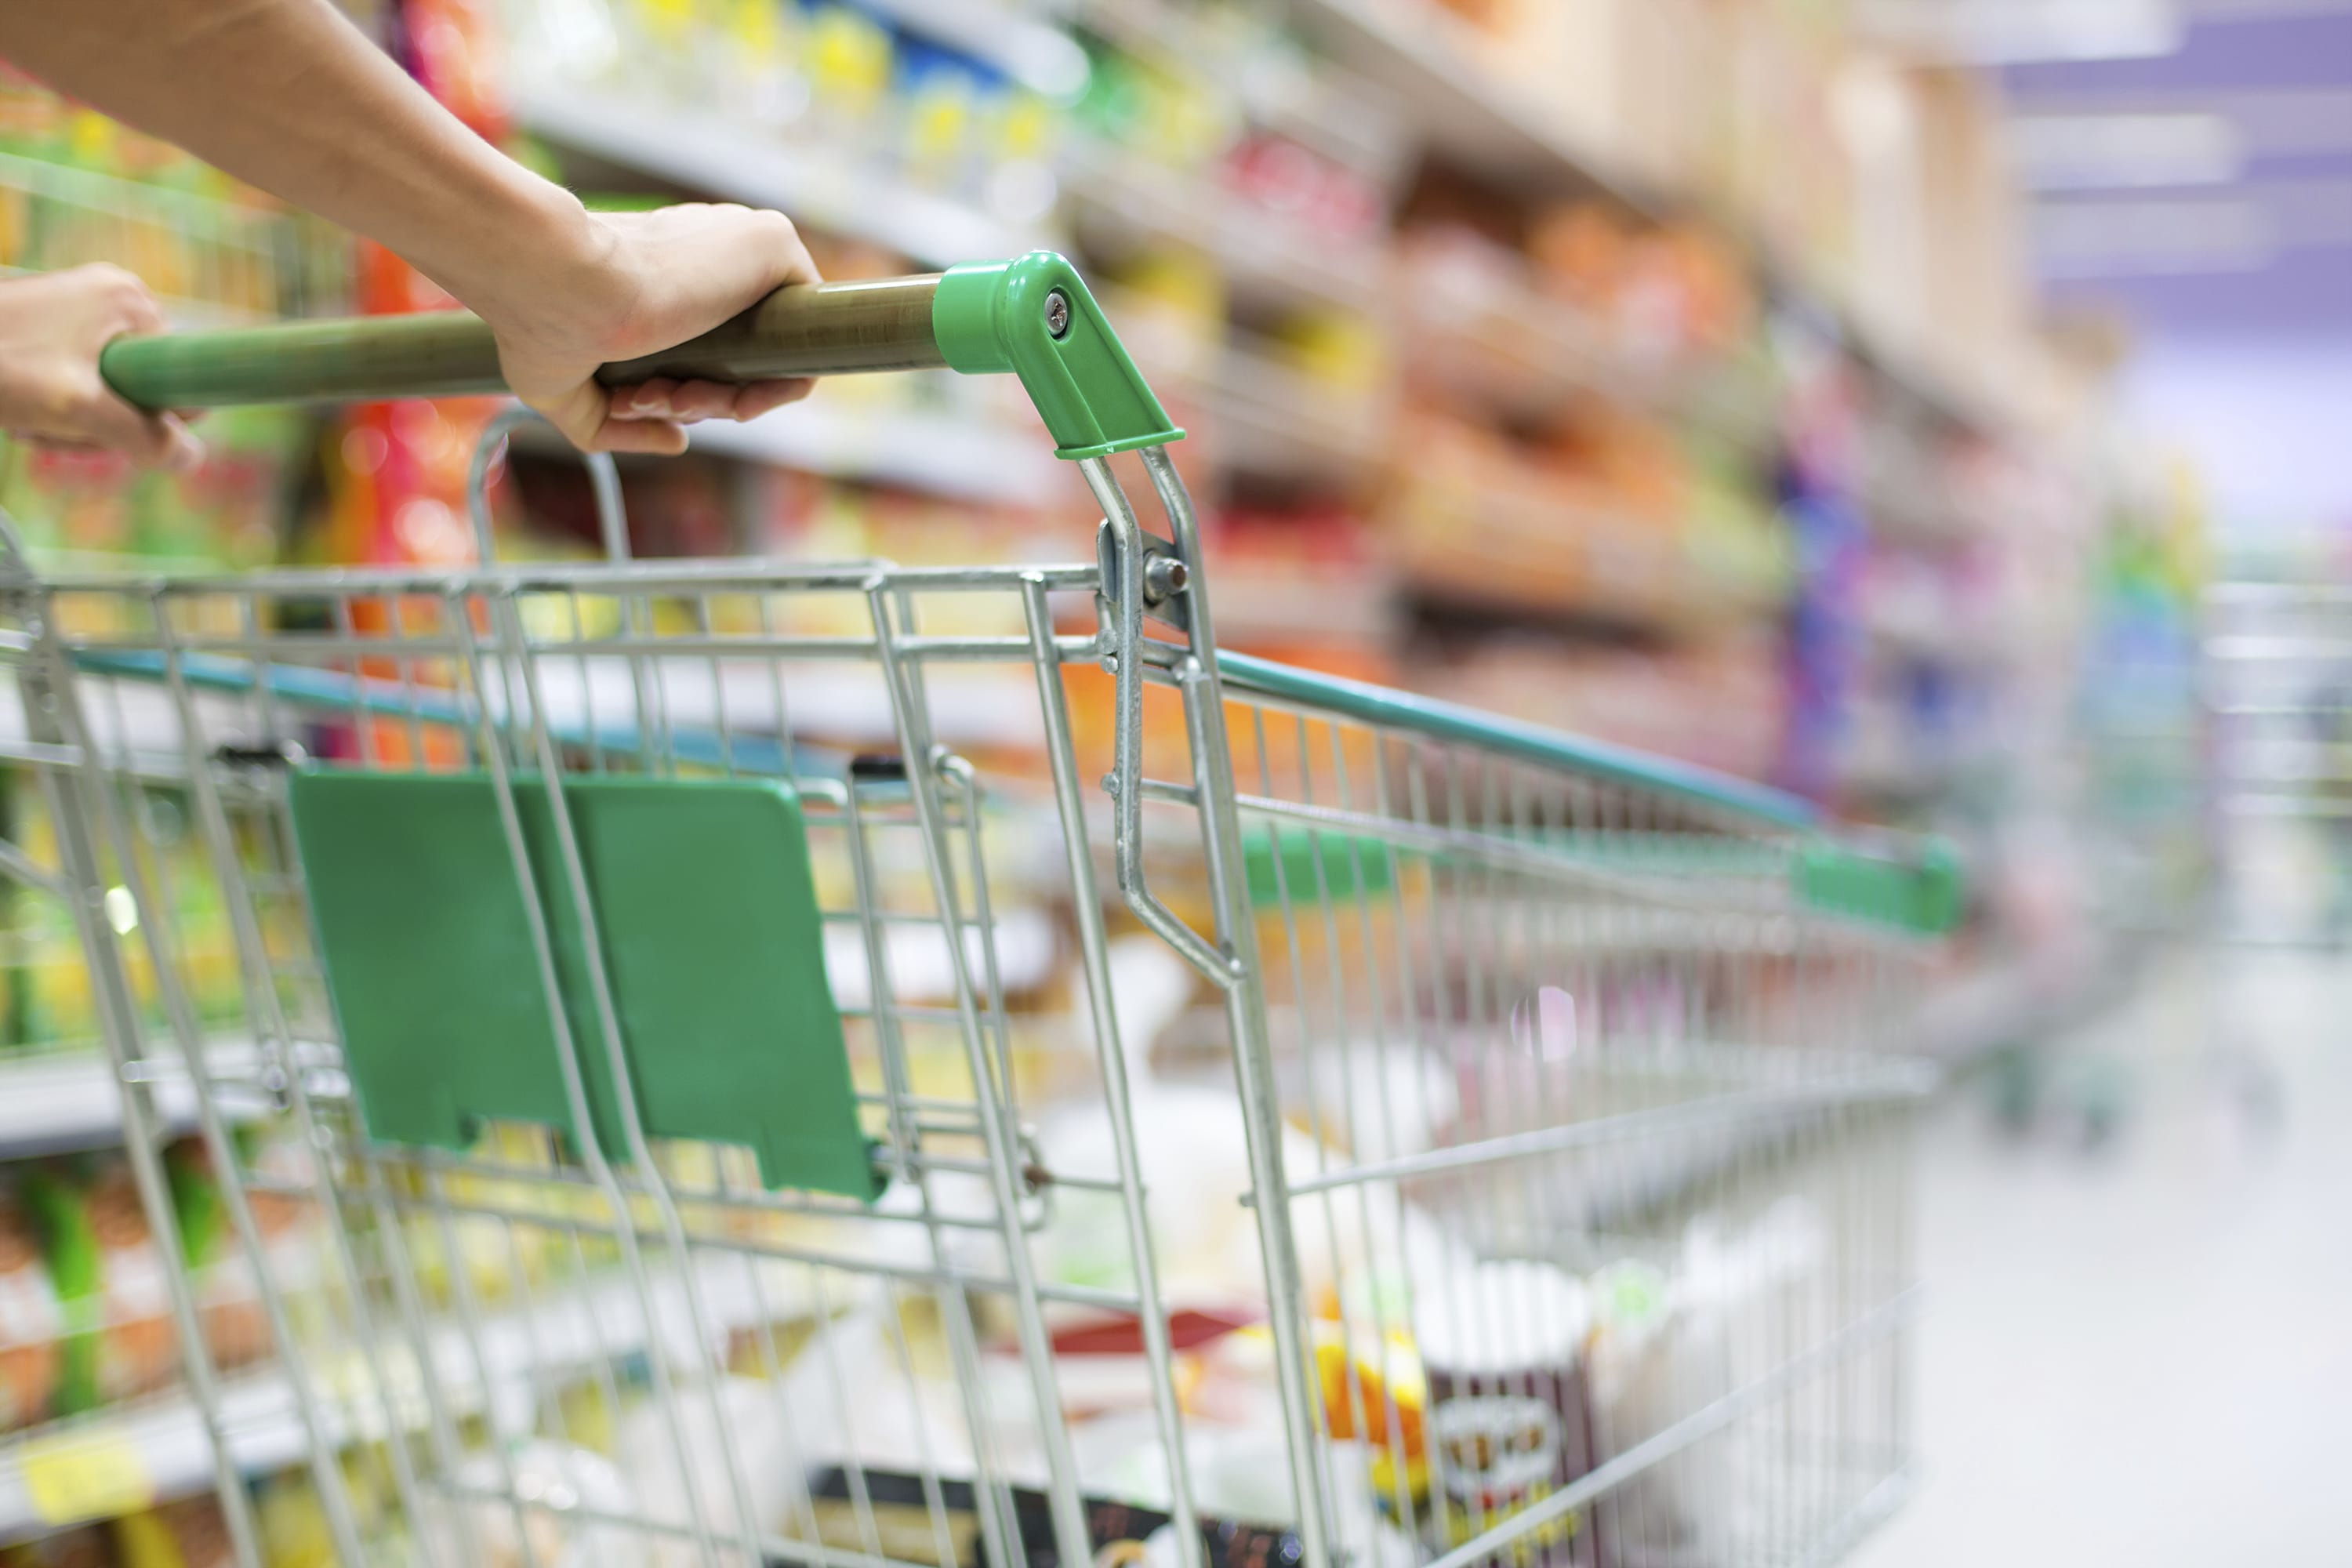 Energia da scarti alimentari: il progetto della catena di supermercati Sainsbury